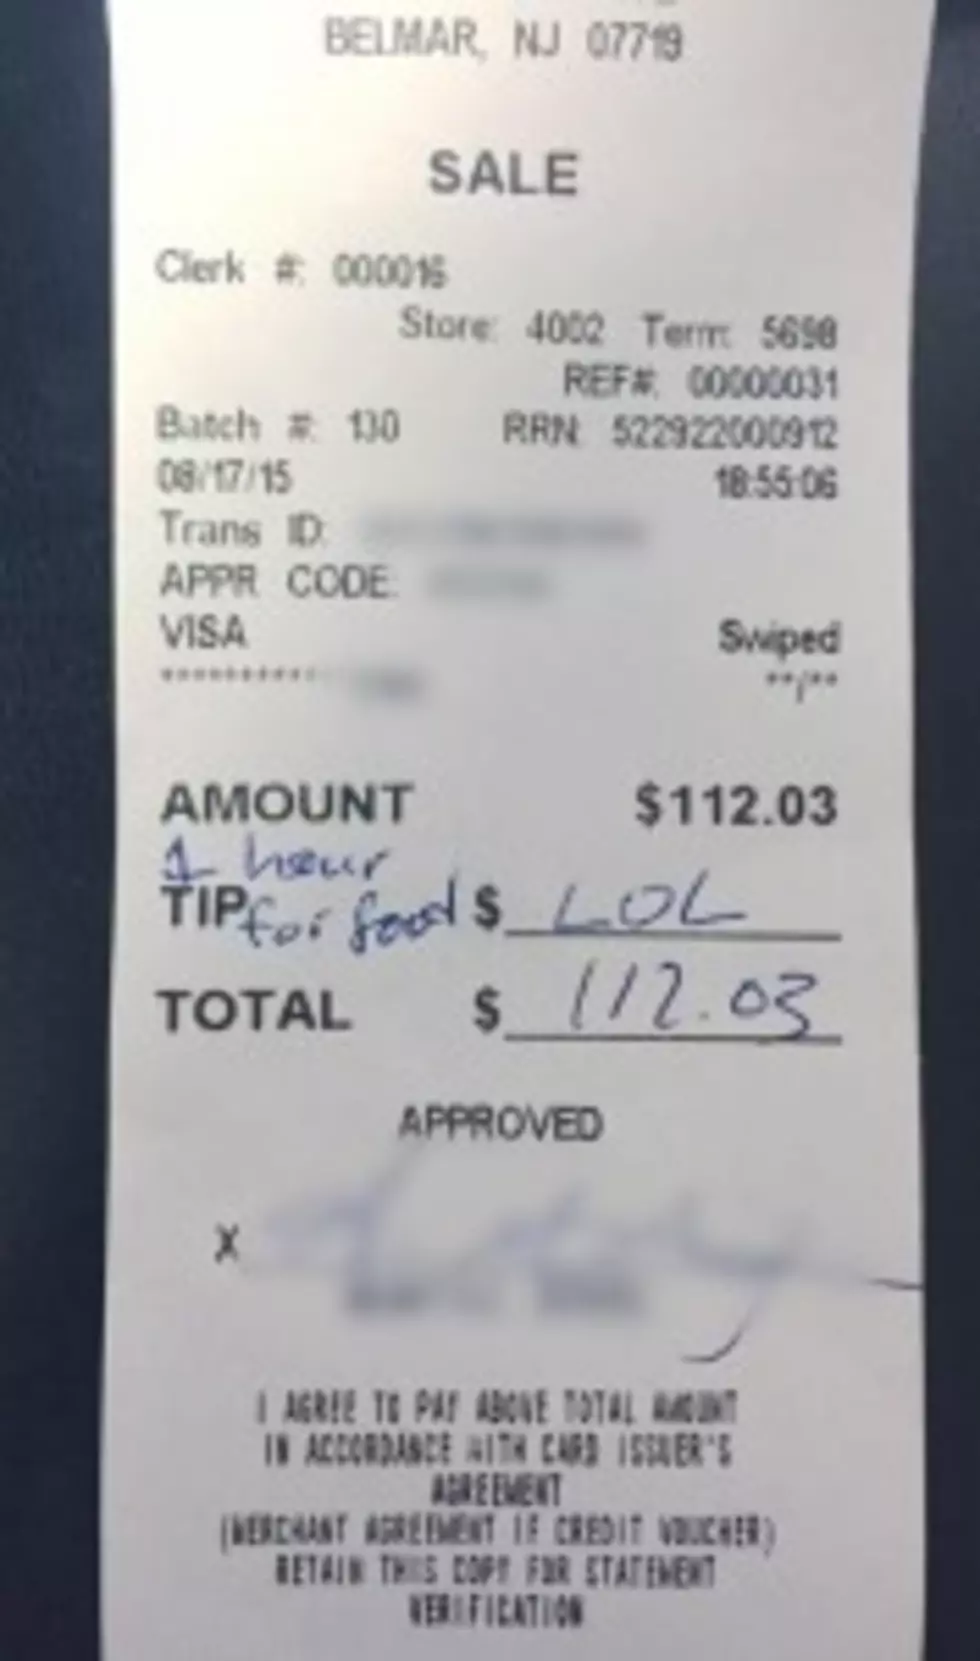 Belmar waitress stiffed on tip, you folks spread blame around